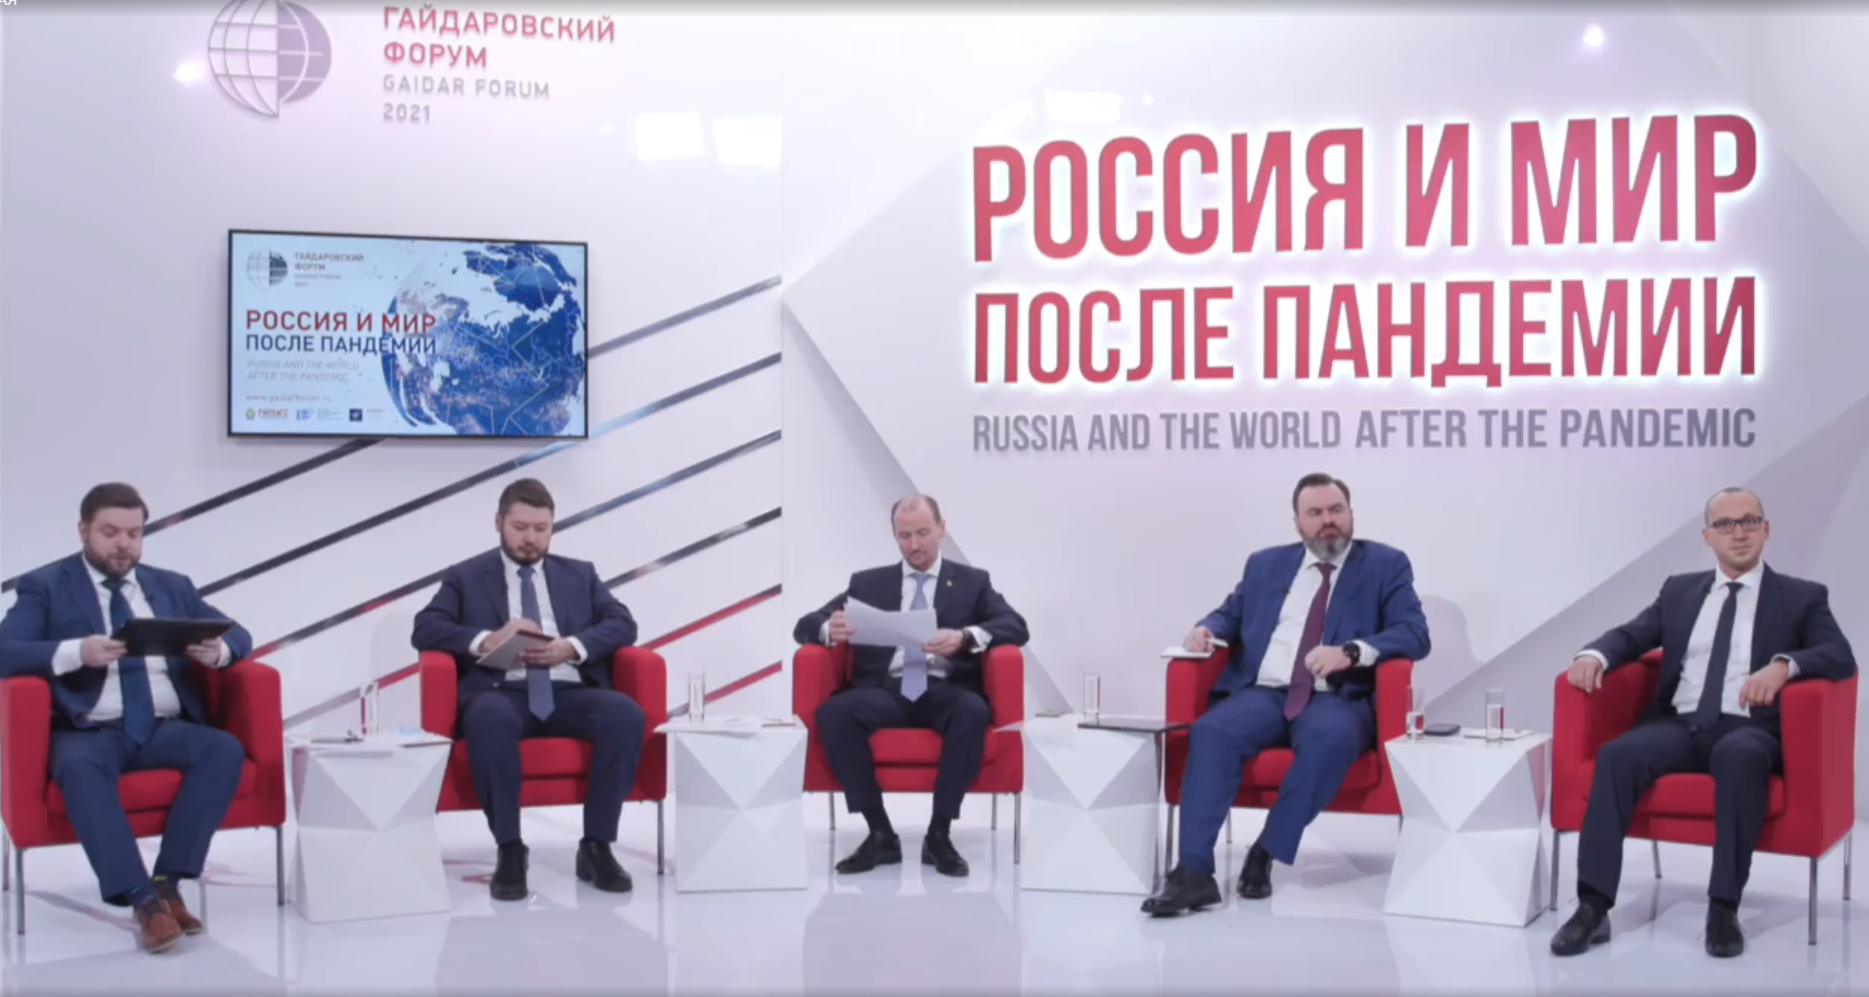 Нижегородская делегация приняла участие в Гайдаровском форуме 2021